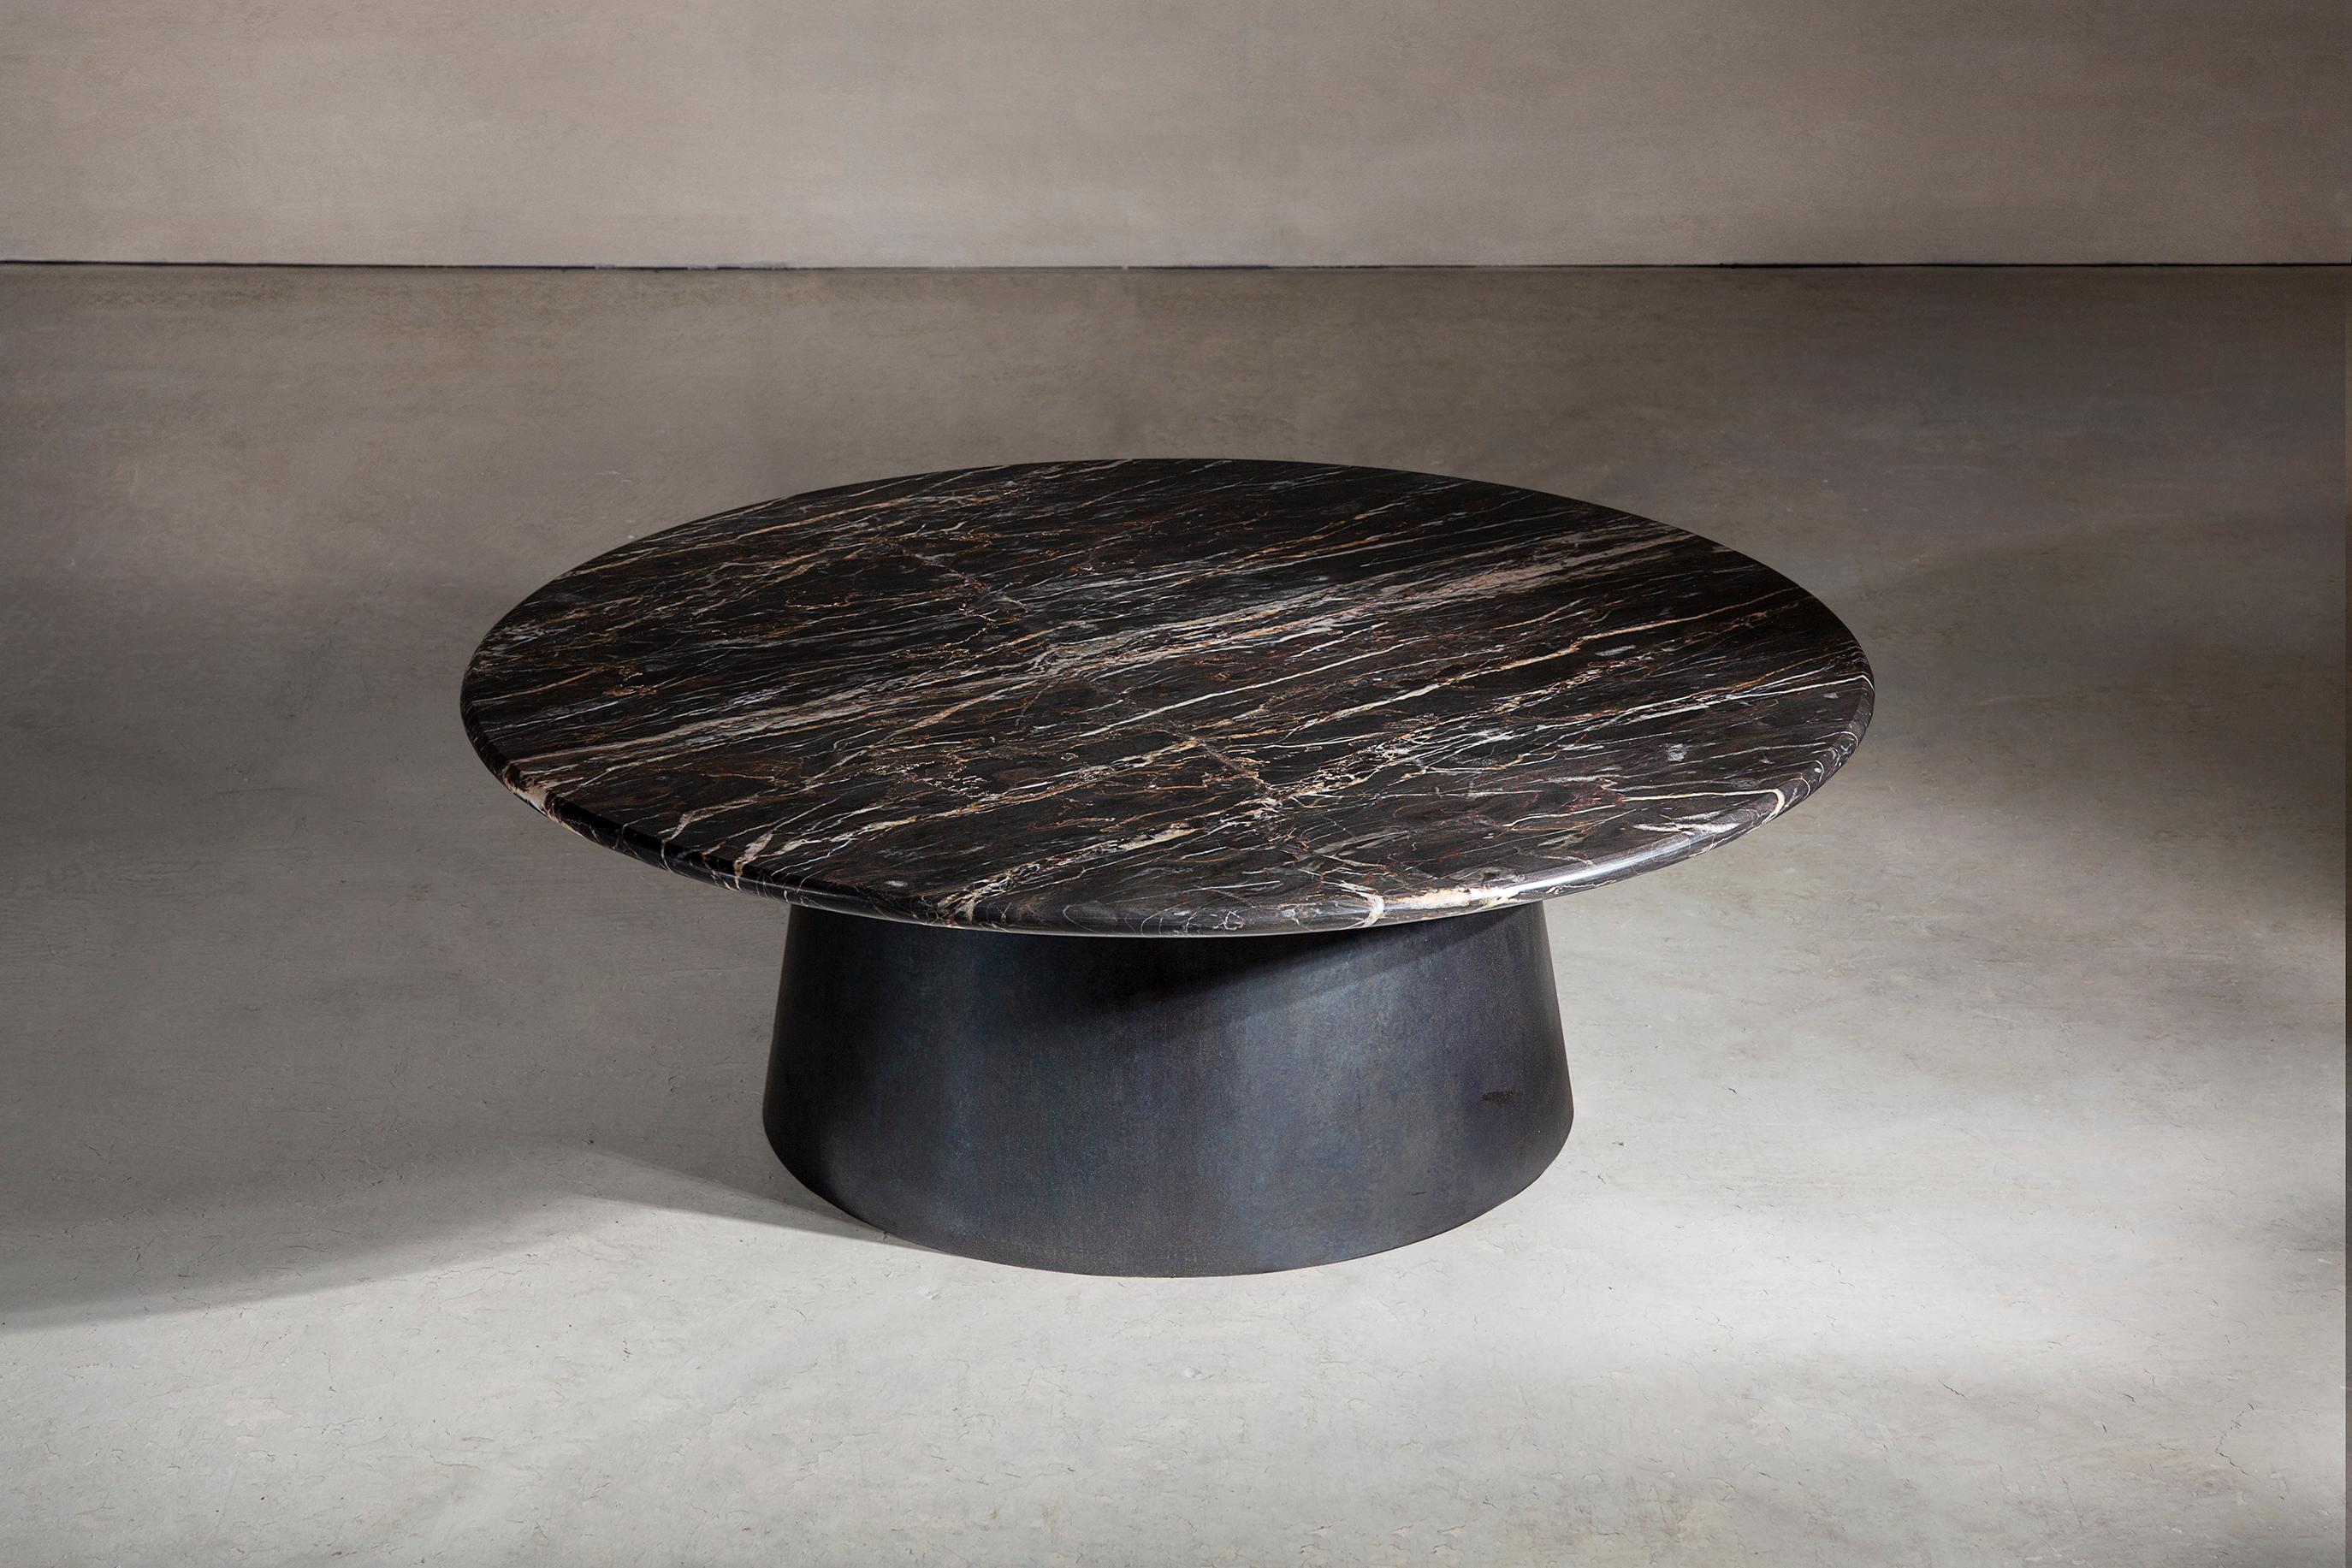 Une table basse circulaire en marbre britannique incroyablement rare et en acier noirci. Fabriqué à la main sur commande dans le Nord. 

Mesures : 100 cm de diamètre x 35 cm de hauteur.
Finitions et dimensions personnalisées disponibles sur demande.